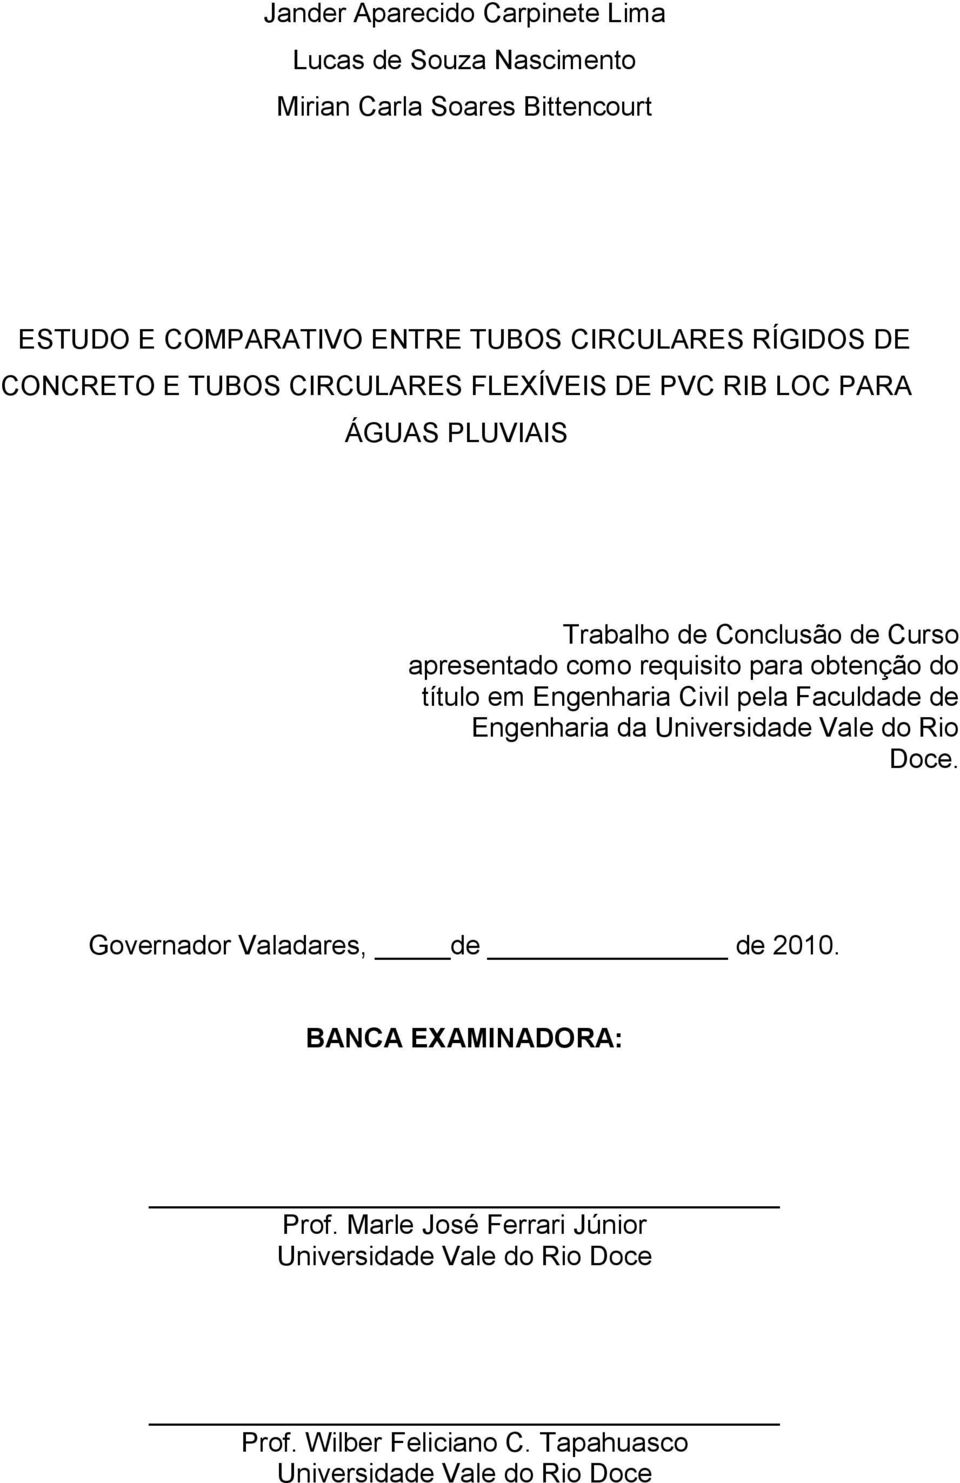 requisito para obtenção do título em Engenharia Civil pela Faculdade de Engenharia da Universidade Vale do Rio Doce.